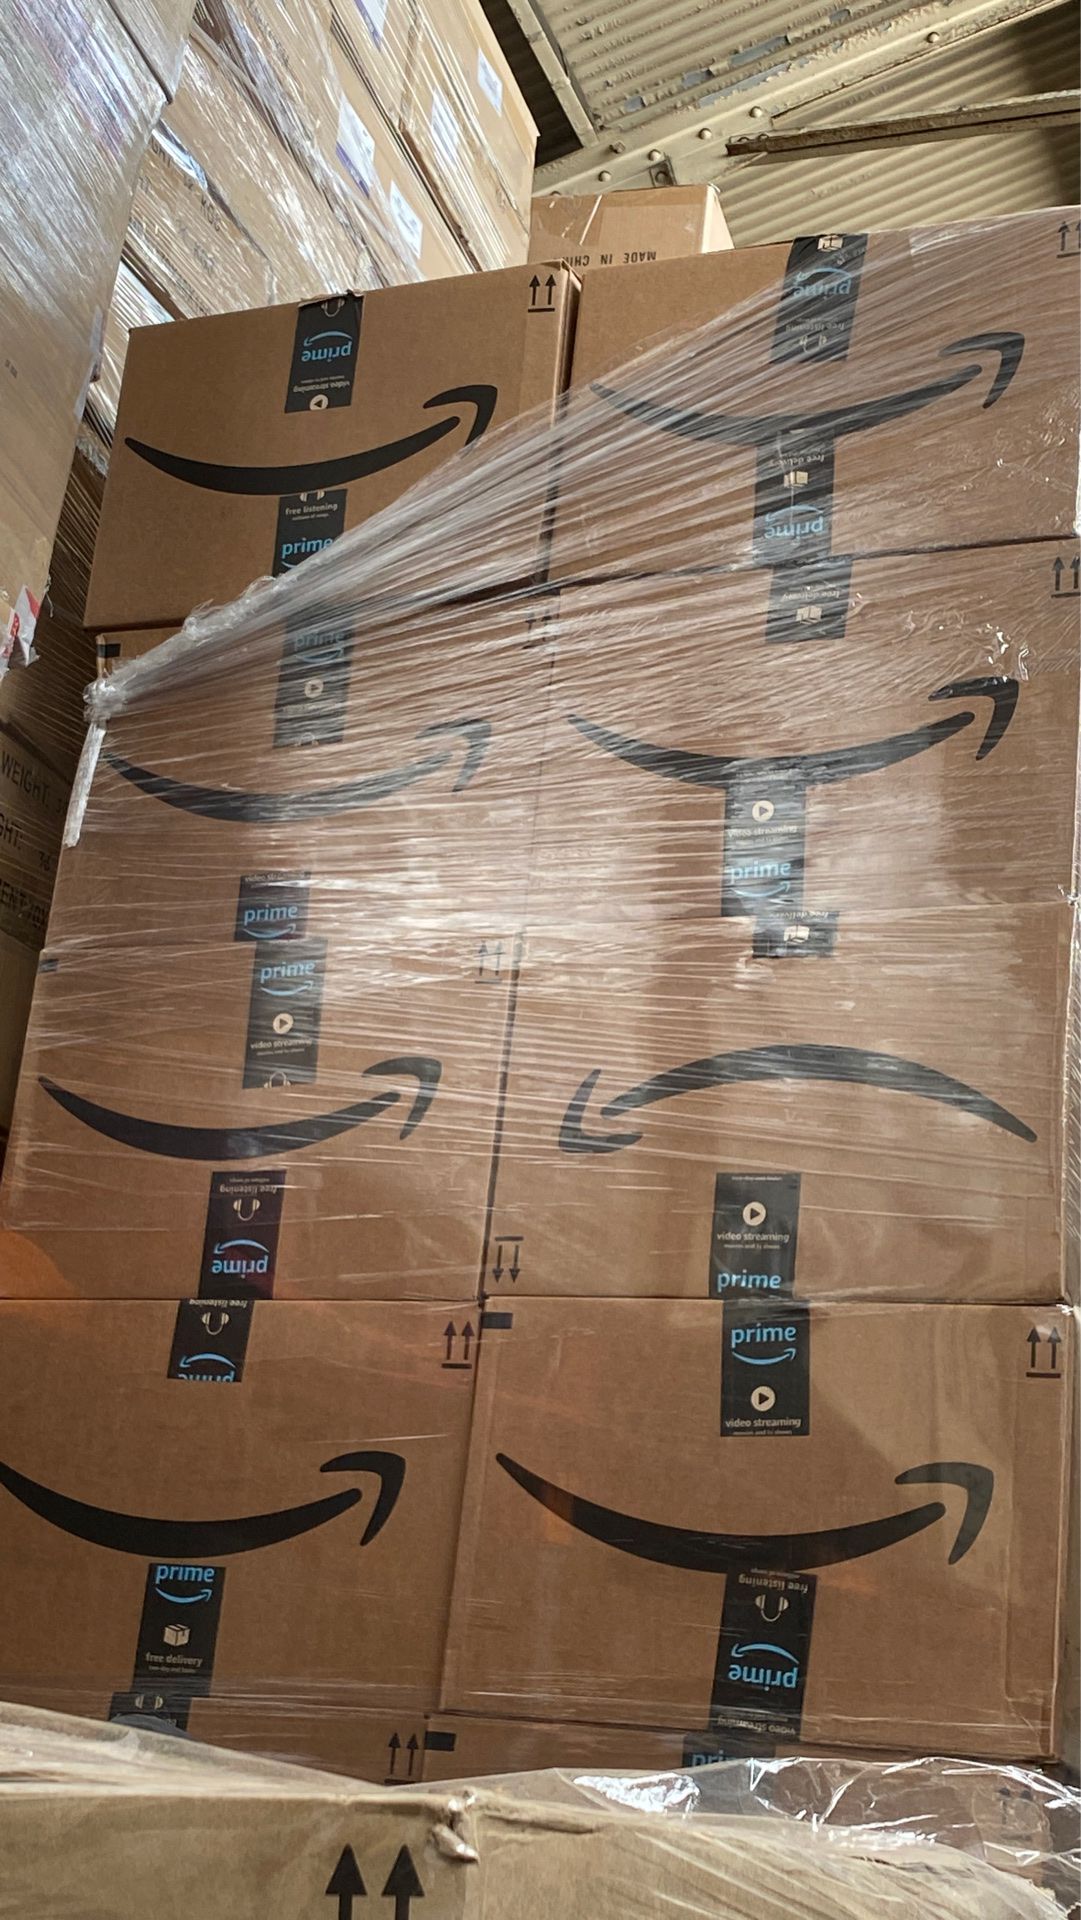 Amazon pallets wholesale.